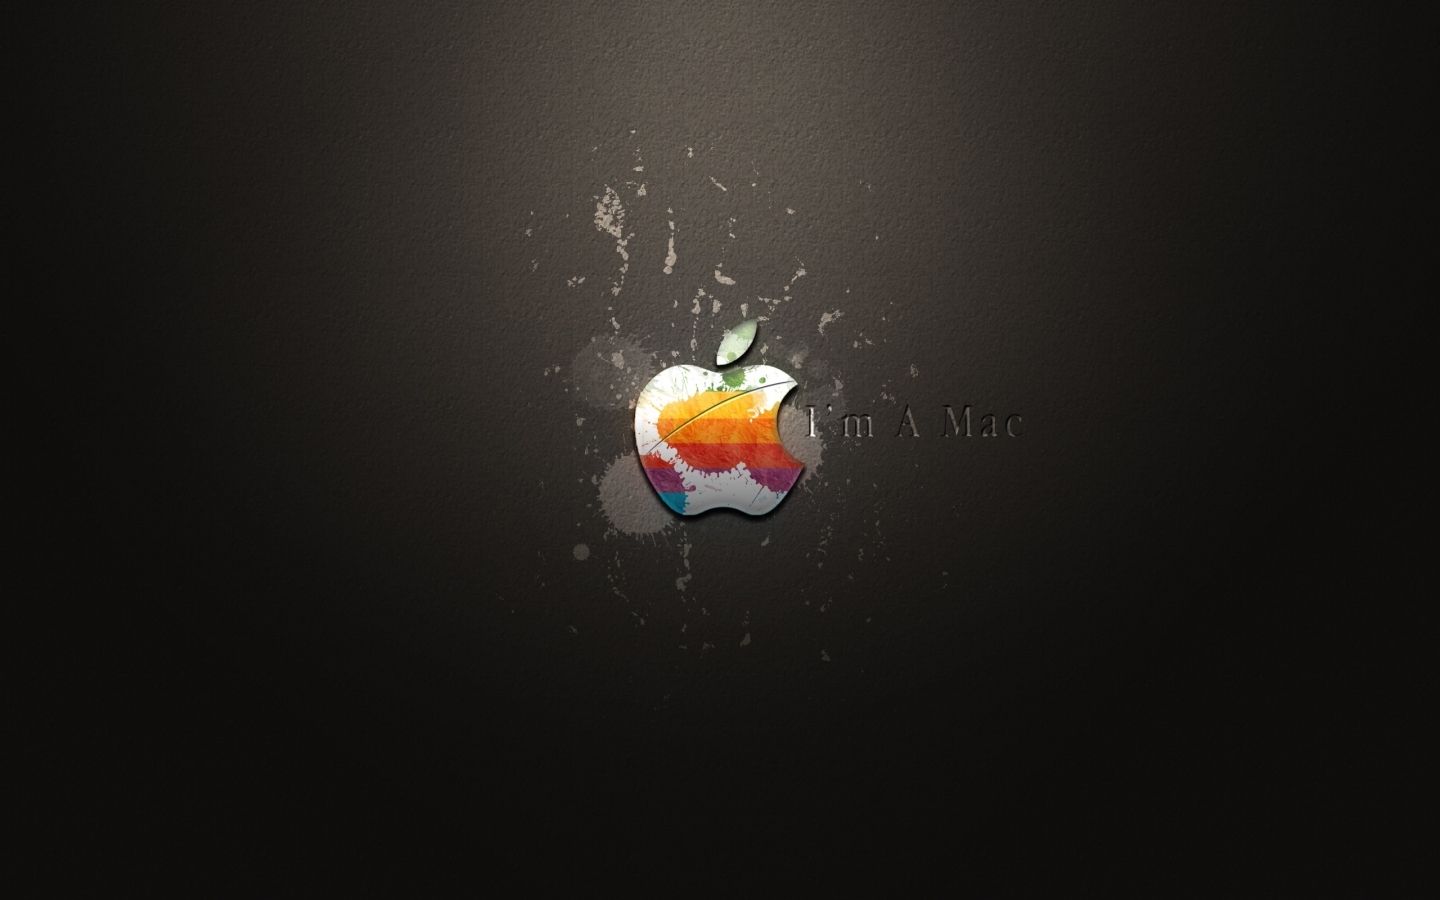 Think Different Apple Mac 19 Mac Wallpaper Download | Free Mac ...